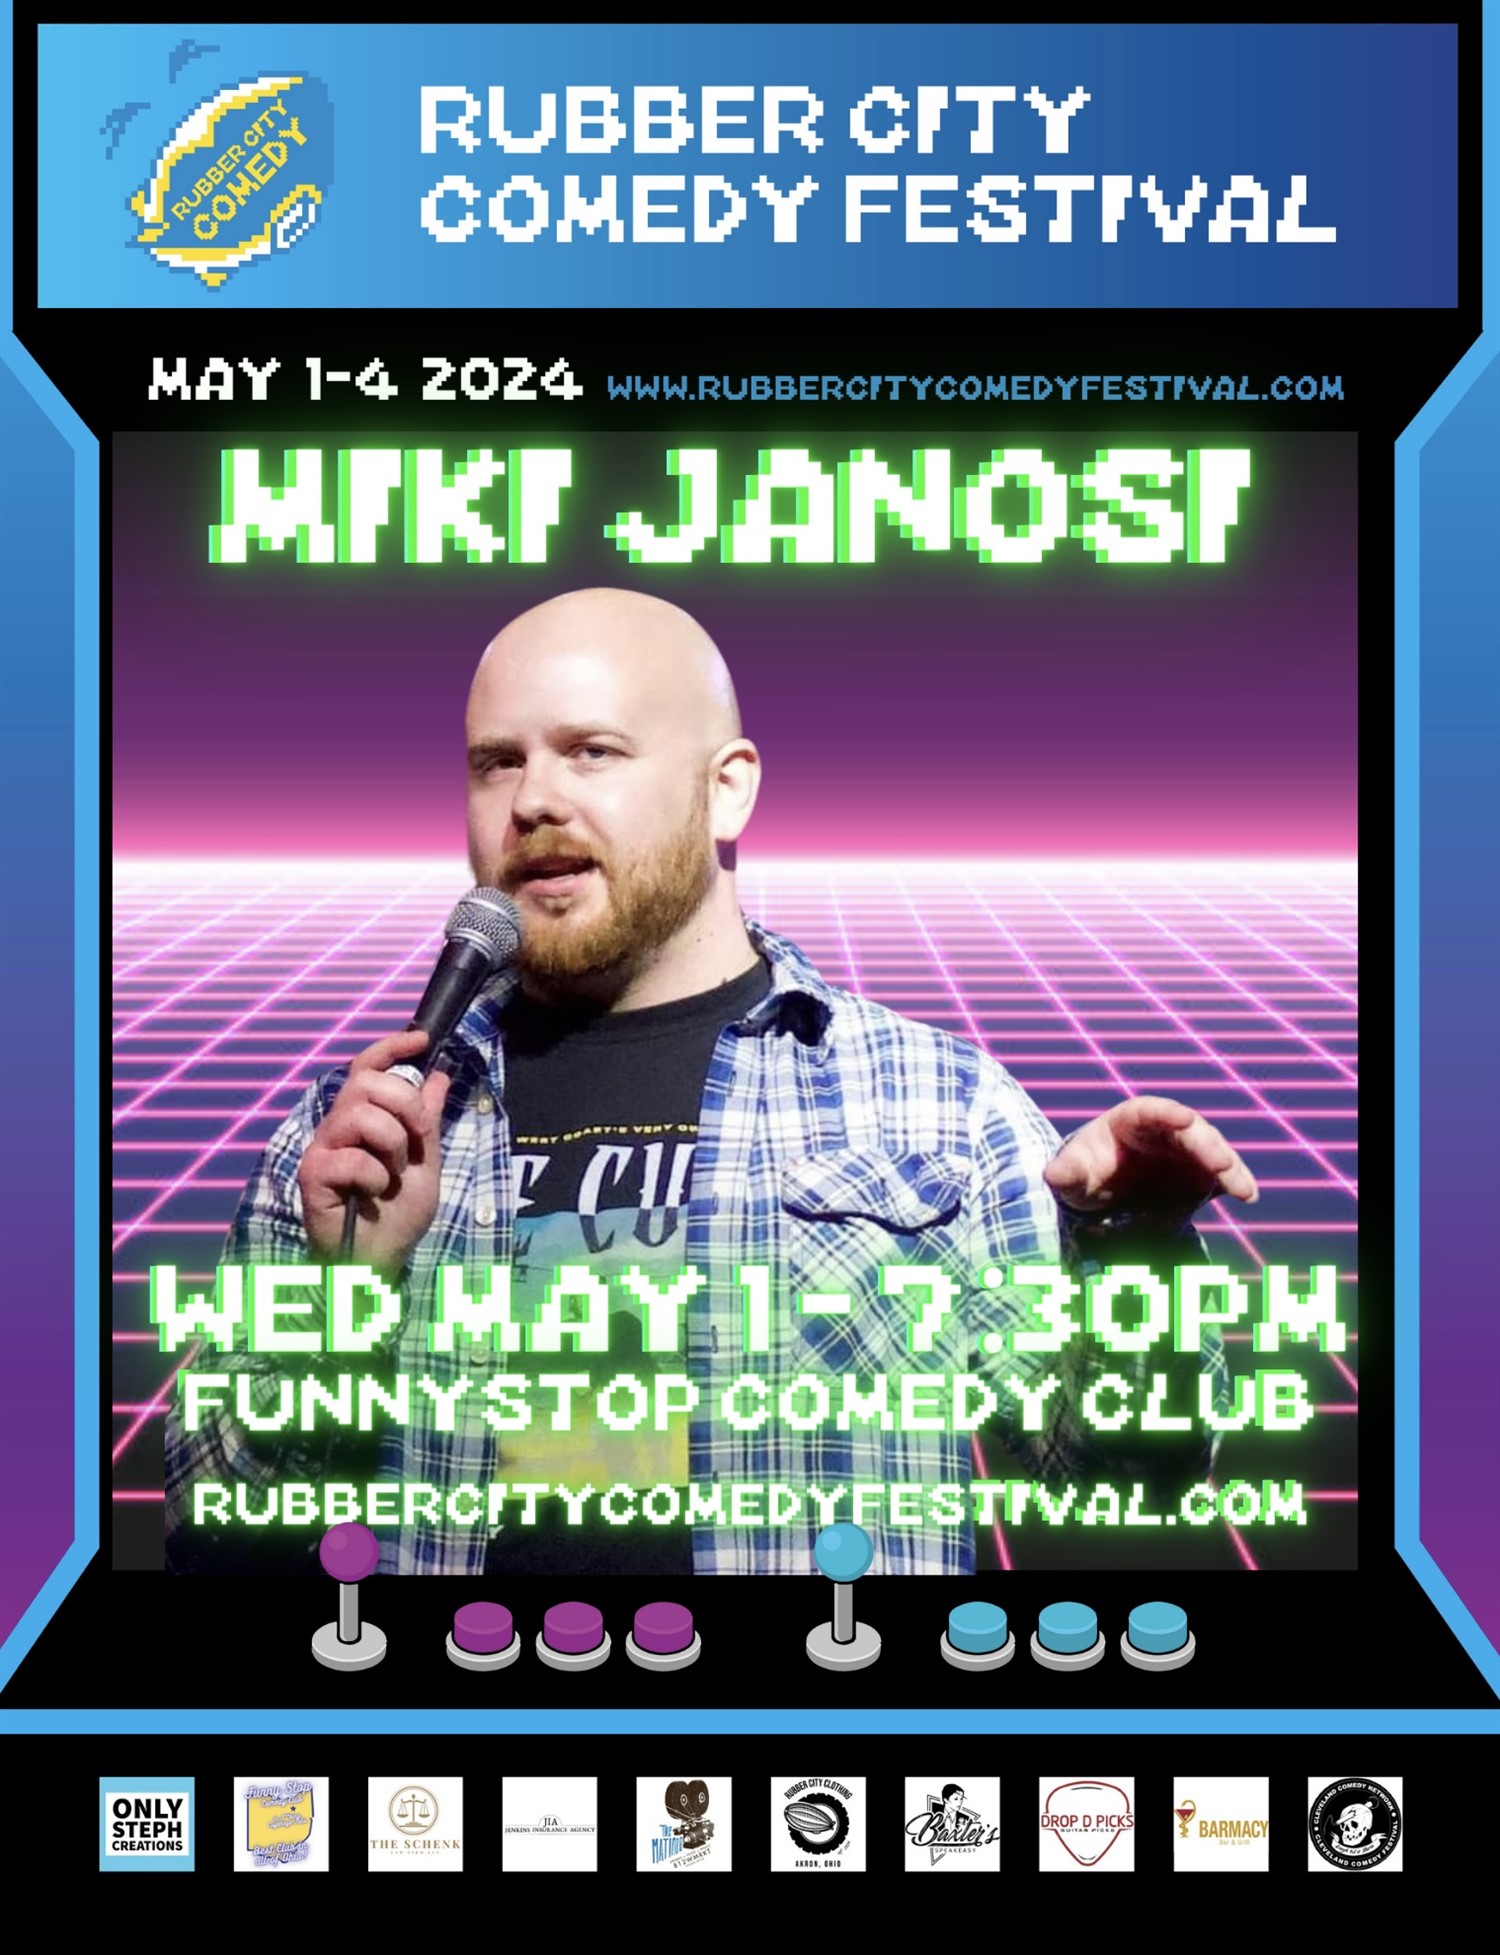 Miki Janosi Headlines for Rubber City Comedy Festival Funny Stop Comedy Club on may. 01, 19:30@Funny Stop Comedy Club - Compra entradas y obtén información enFunny Stop funnystop.online